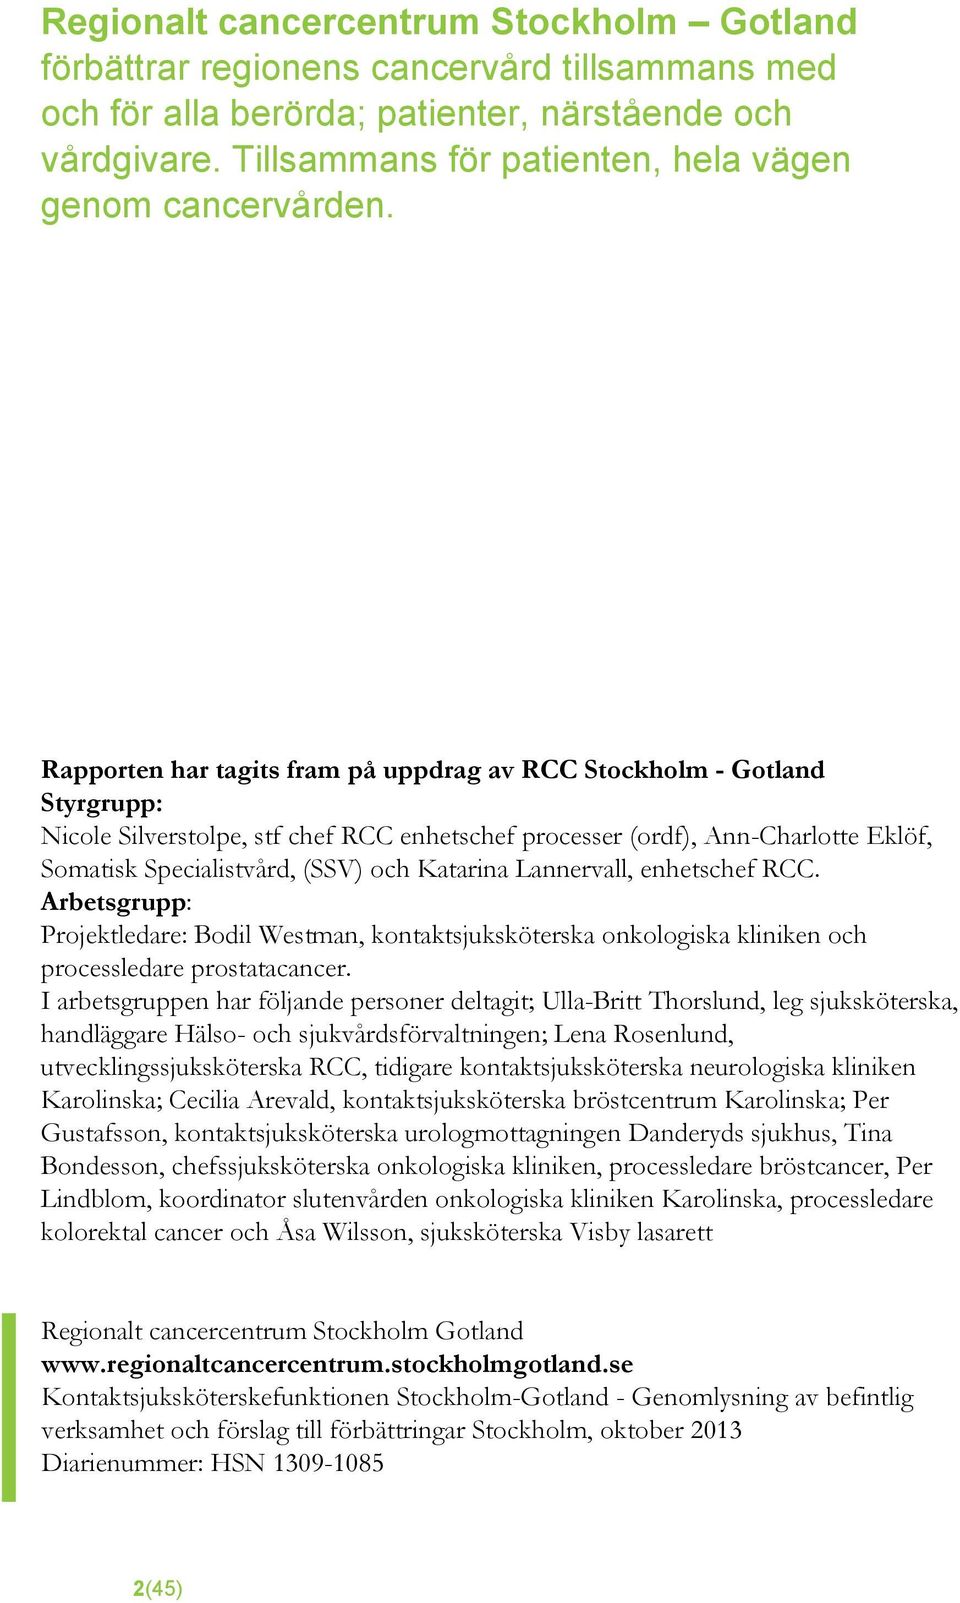 Rapporten har tagits fram på uppdrag av RCC Stockholm - Gotland Styrgrupp: Nicole Silverstolpe, stf chef RCC enhetschef processer (ordf), Ann-Charlotte Eklöf, Somatisk Specialistvård, (SSV) och